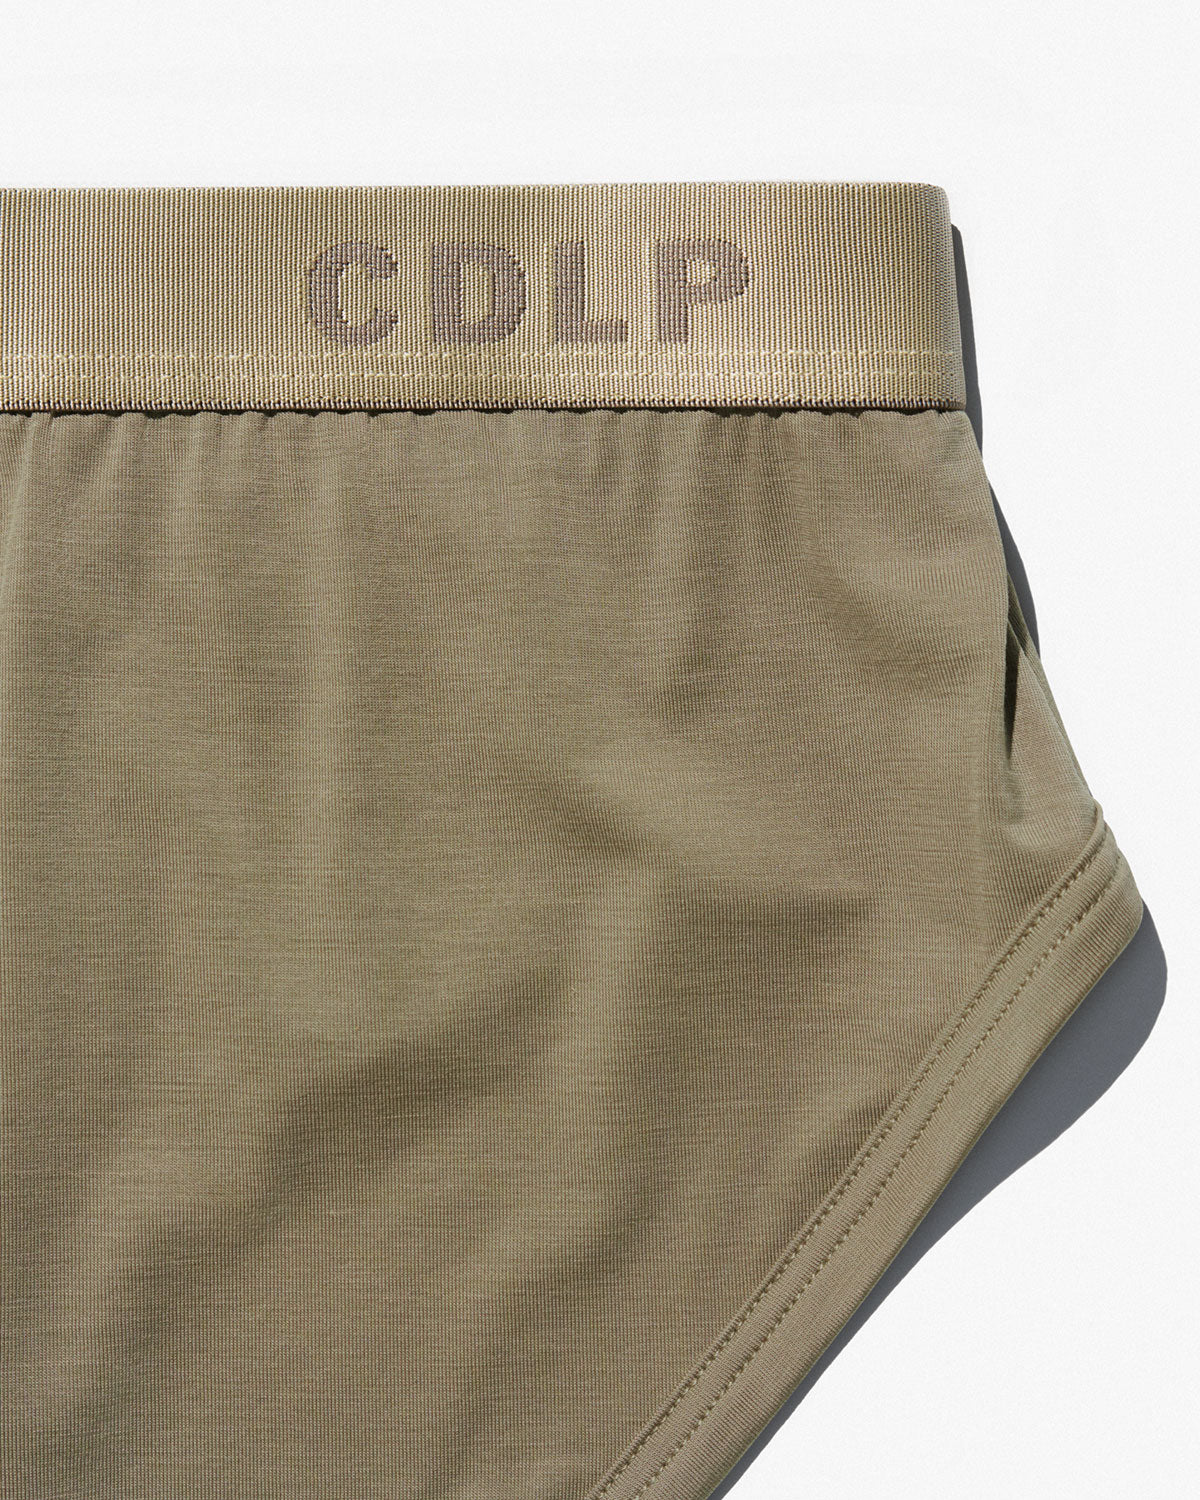 × CDLP – in now 3 | Clay Golden Y-Brief Shop